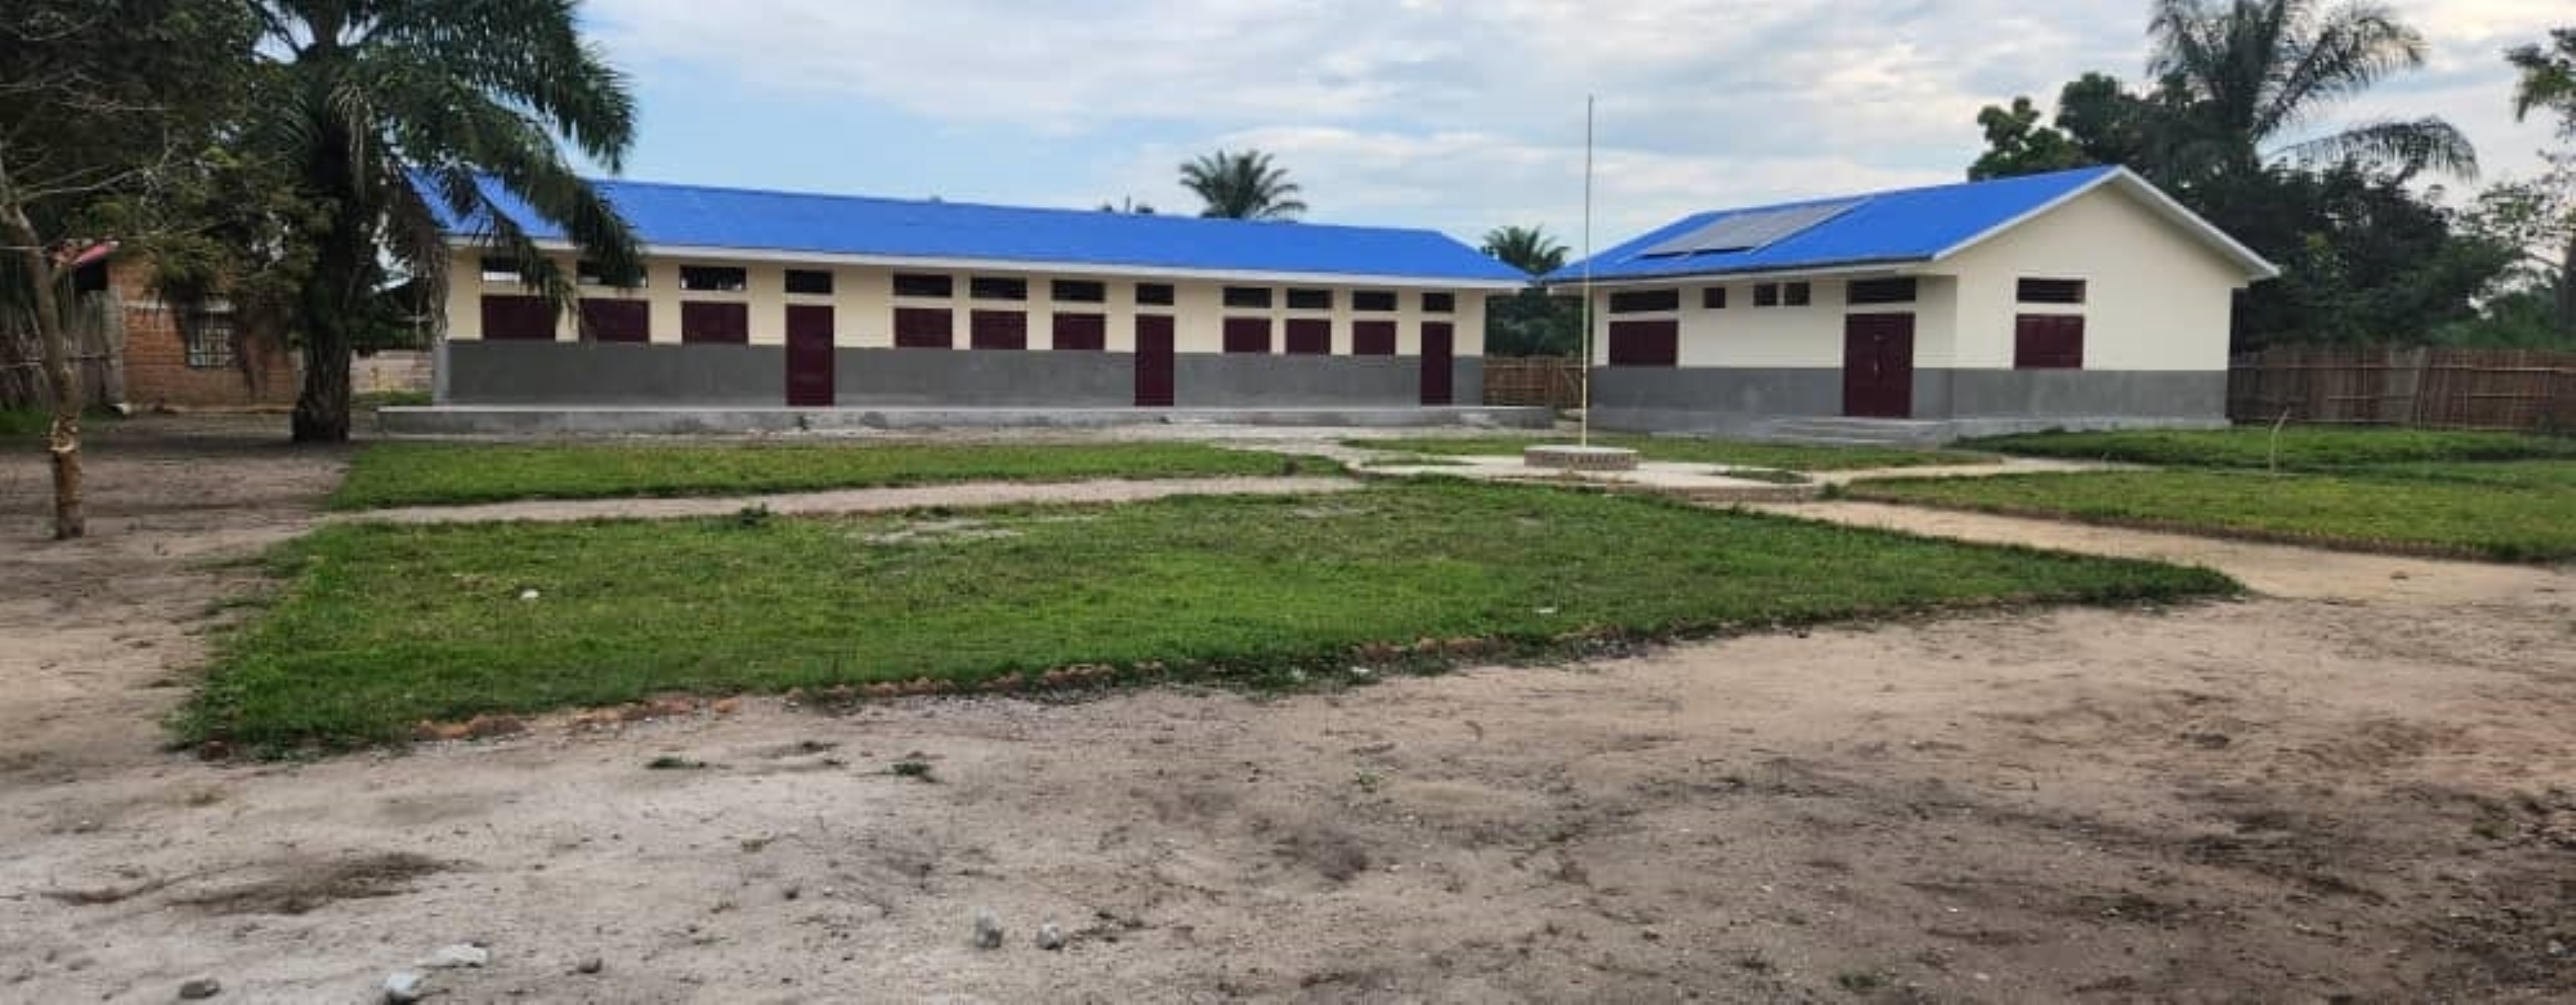 PDL-145 territoires : le PNUD au Sankuru pour la remise d’ouvrage de l’école Primaire Sacré-Coeur